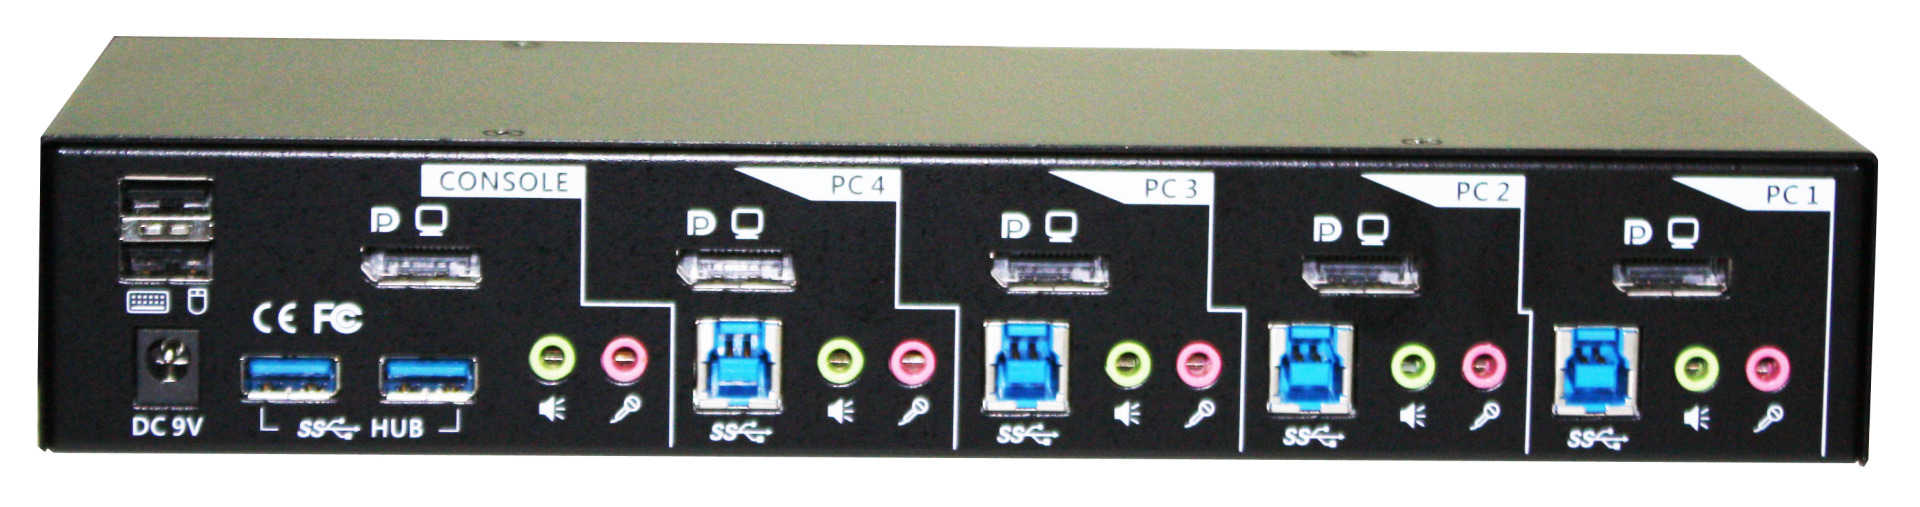 4-Port DisplayPort USB KVM Switch, Audio & USB 3.0 Hub